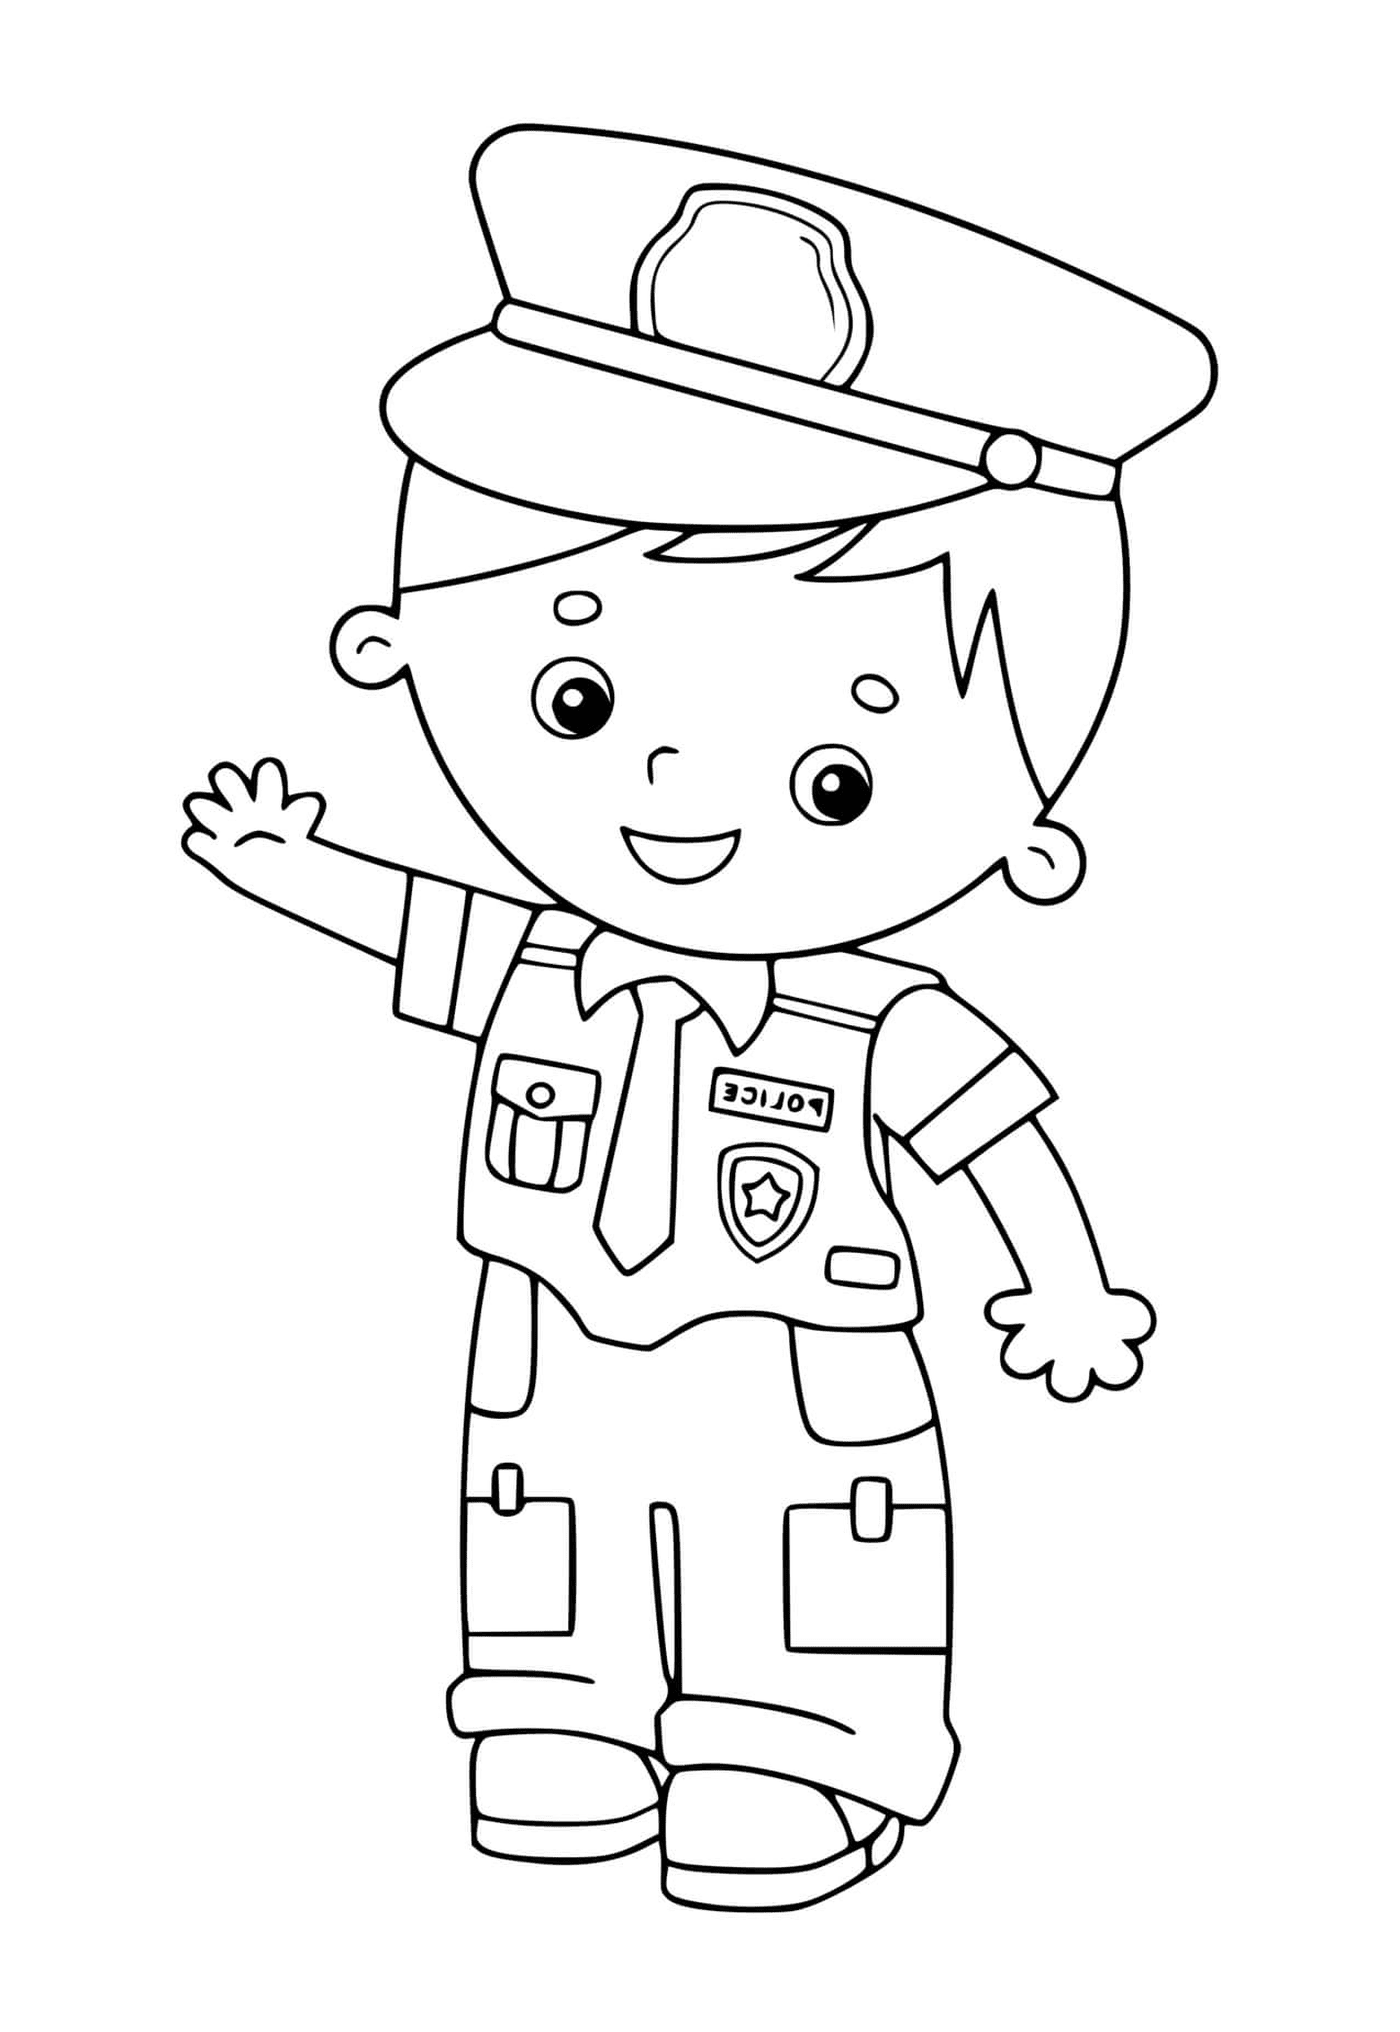   Enfant en uniforme policier 